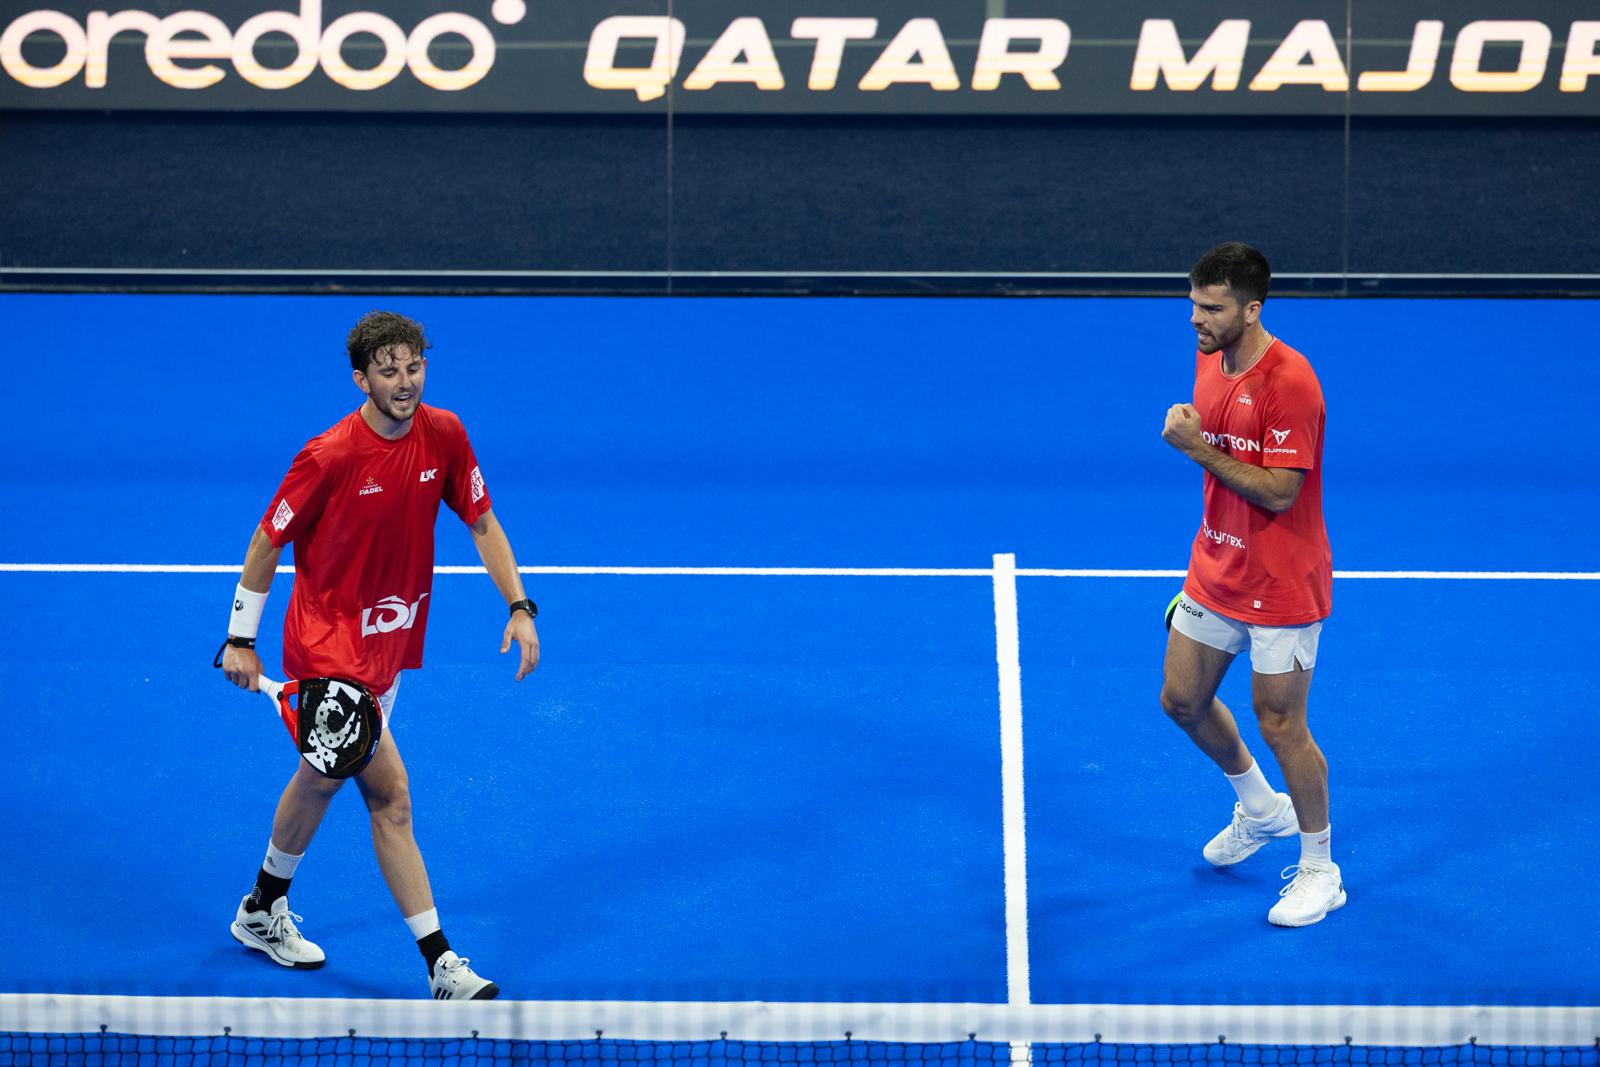 Major Kataru – Mike Yanguas i Javi Garrido miażdżą obrońców tytułu i docierają do finału